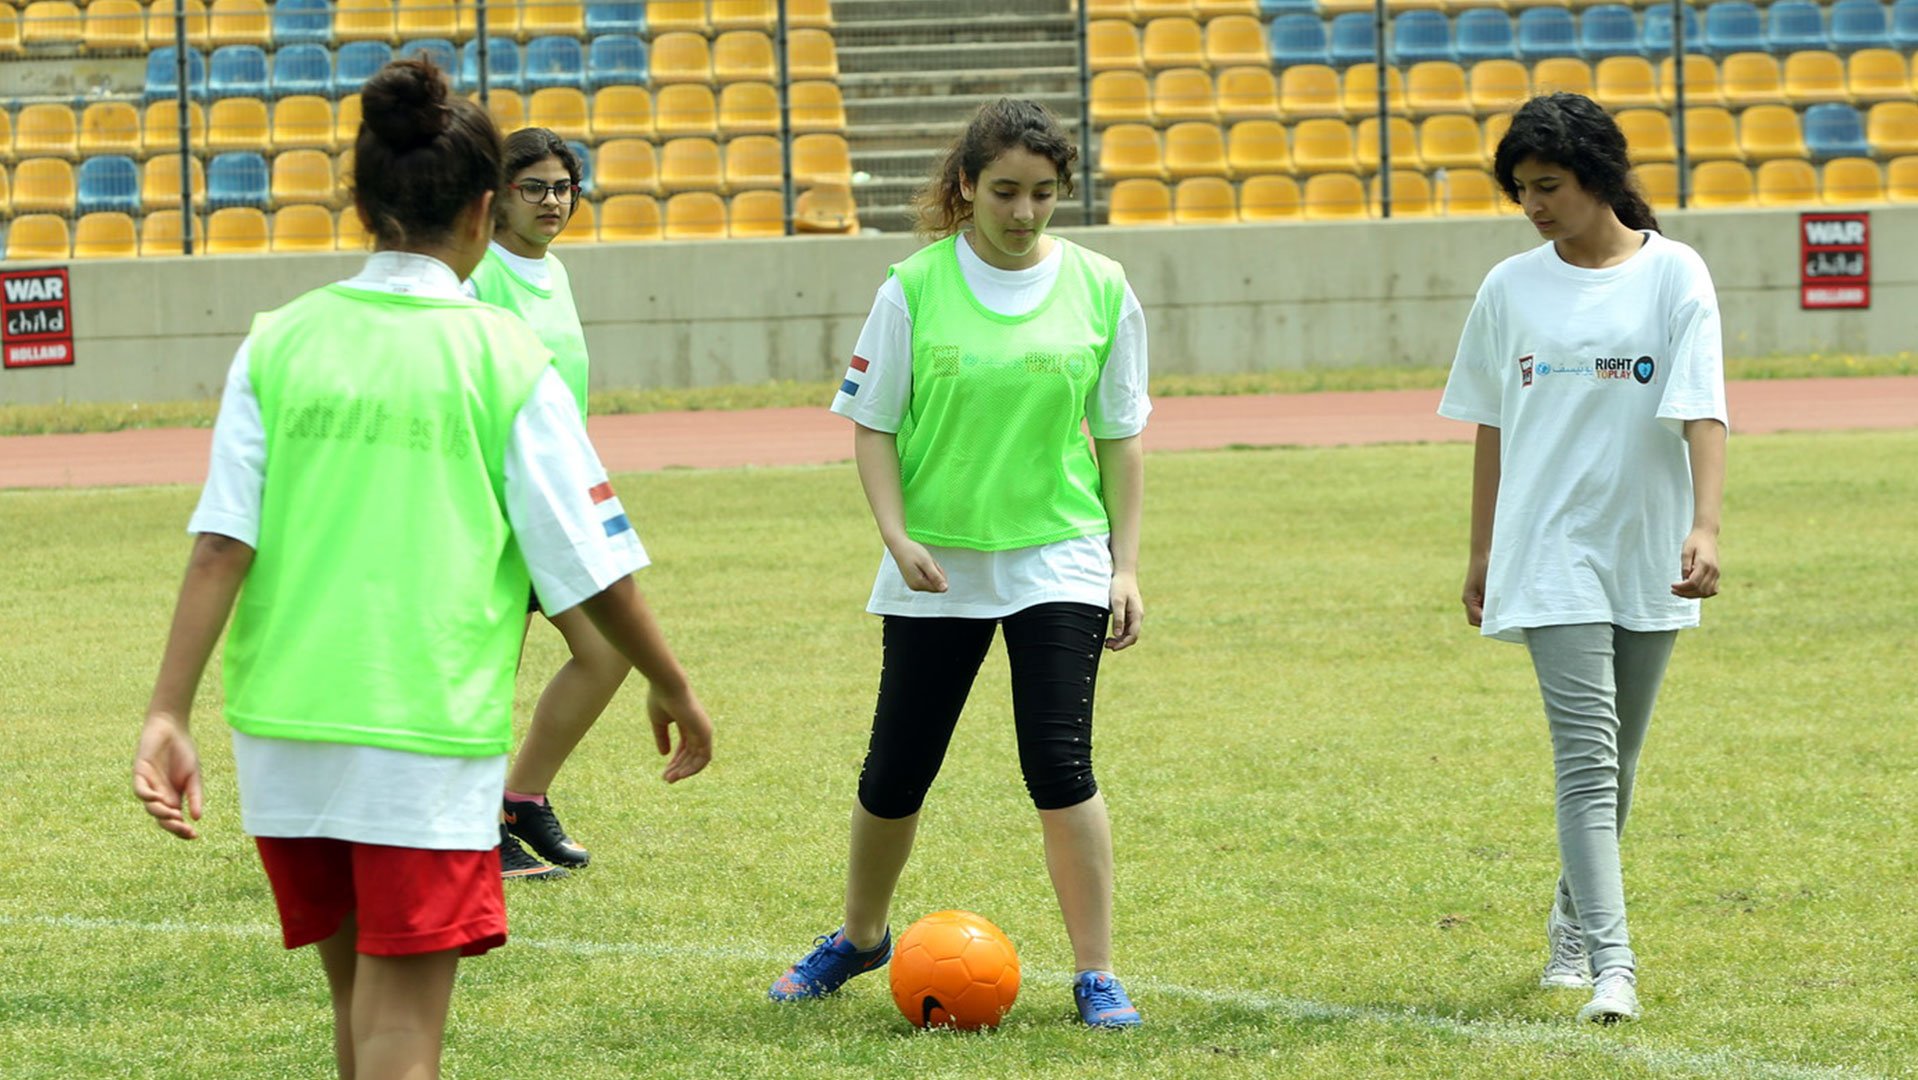 Meisjes in Libanon spelen voetbal en komen dichterbij elkaar - War Child SAHA-project